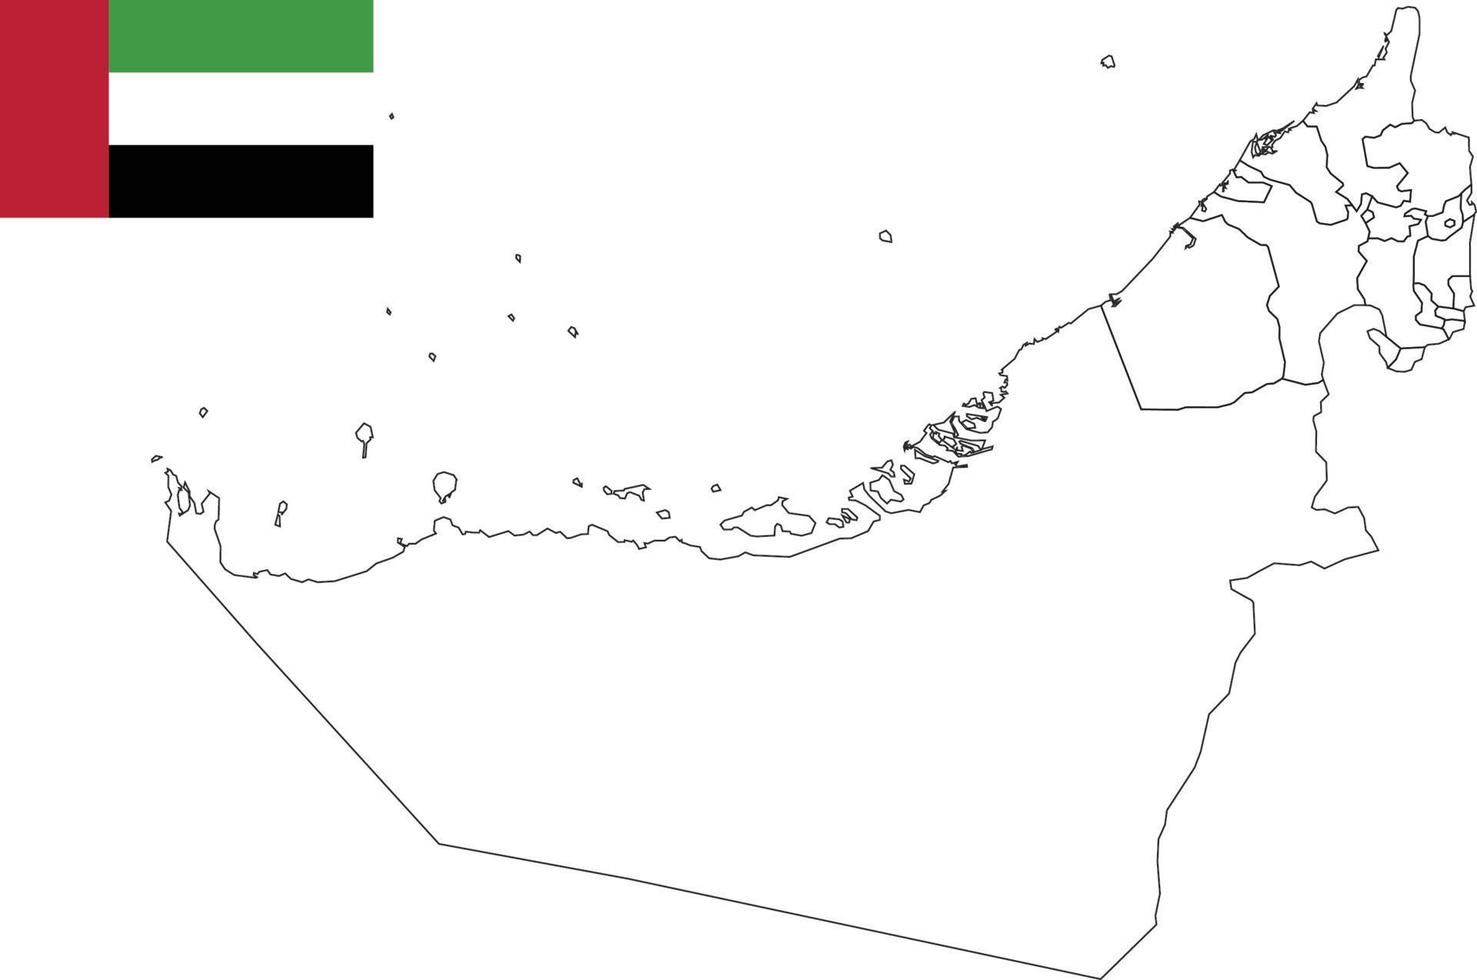 Karte und Flagge der Vereinigten Arabischen Emirate vektor